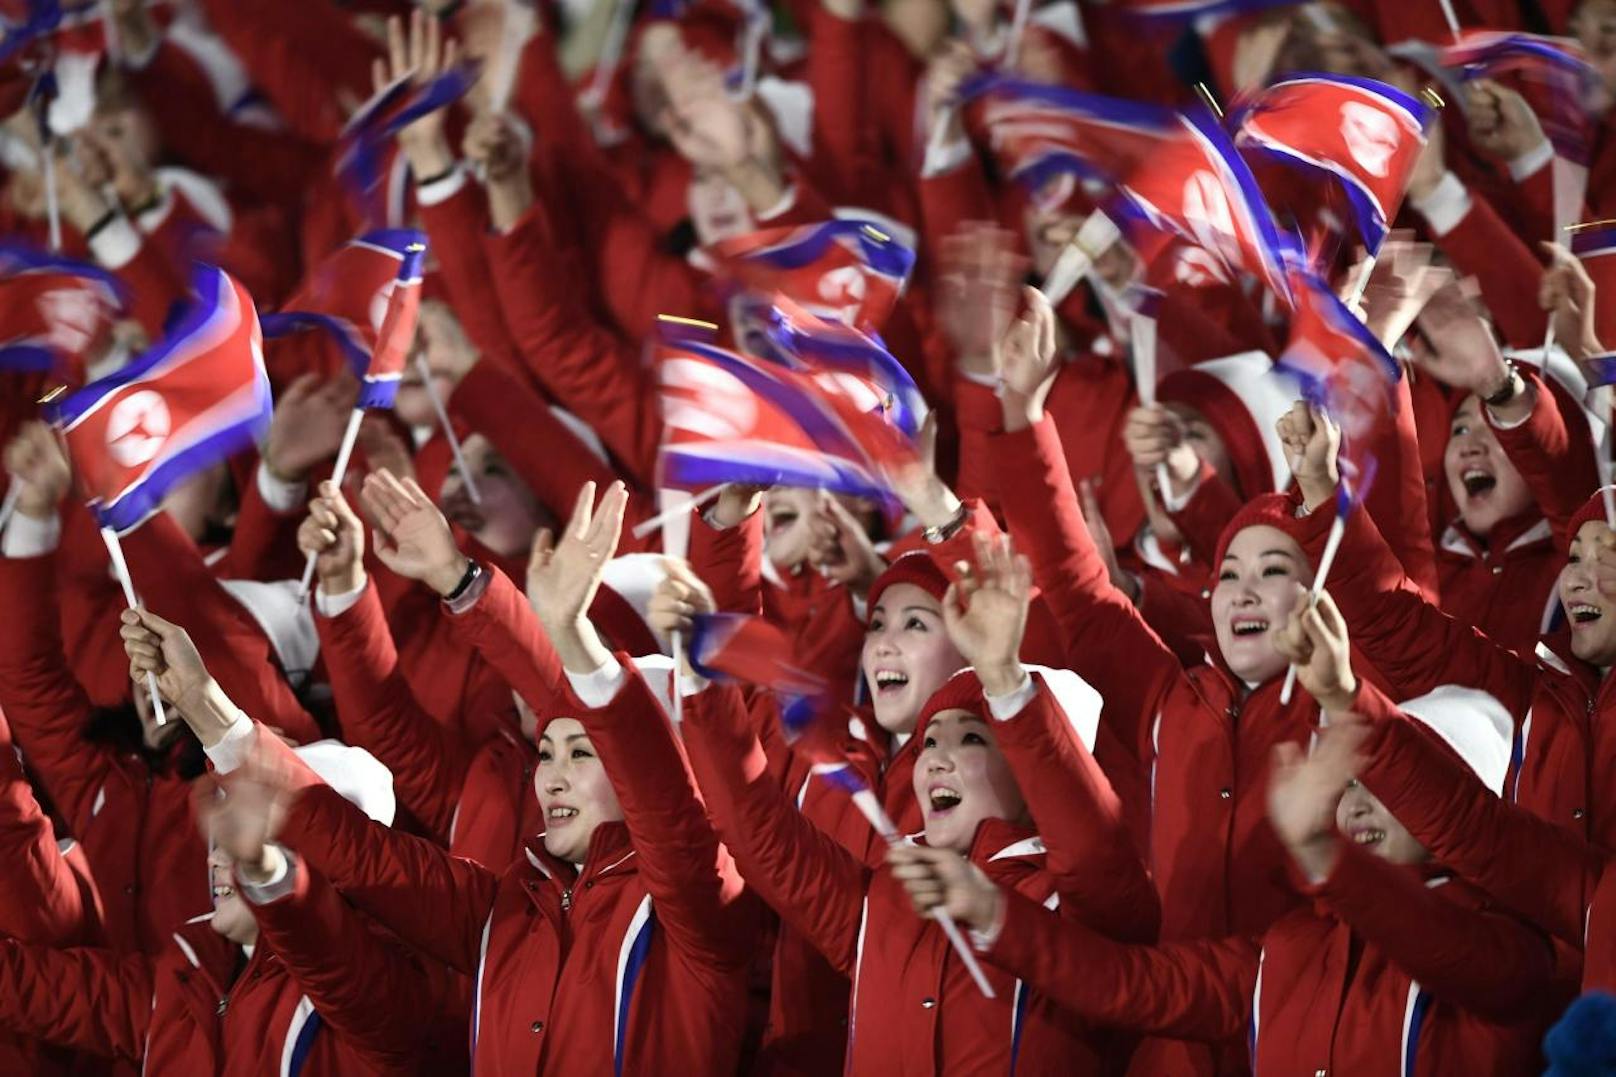 Das Fan-Highlight der Olympischen Spiele waren die Cheerleader des nordkoreanischen Diktators Kim Jong-un. Die "Armee der Schönheit" feuerte mit lautstarkem Gesang und Applaus die Athleten an. Dabei wurde das Propaganda-Instrument des Diktators zum echten Fan-Höhepunkt.